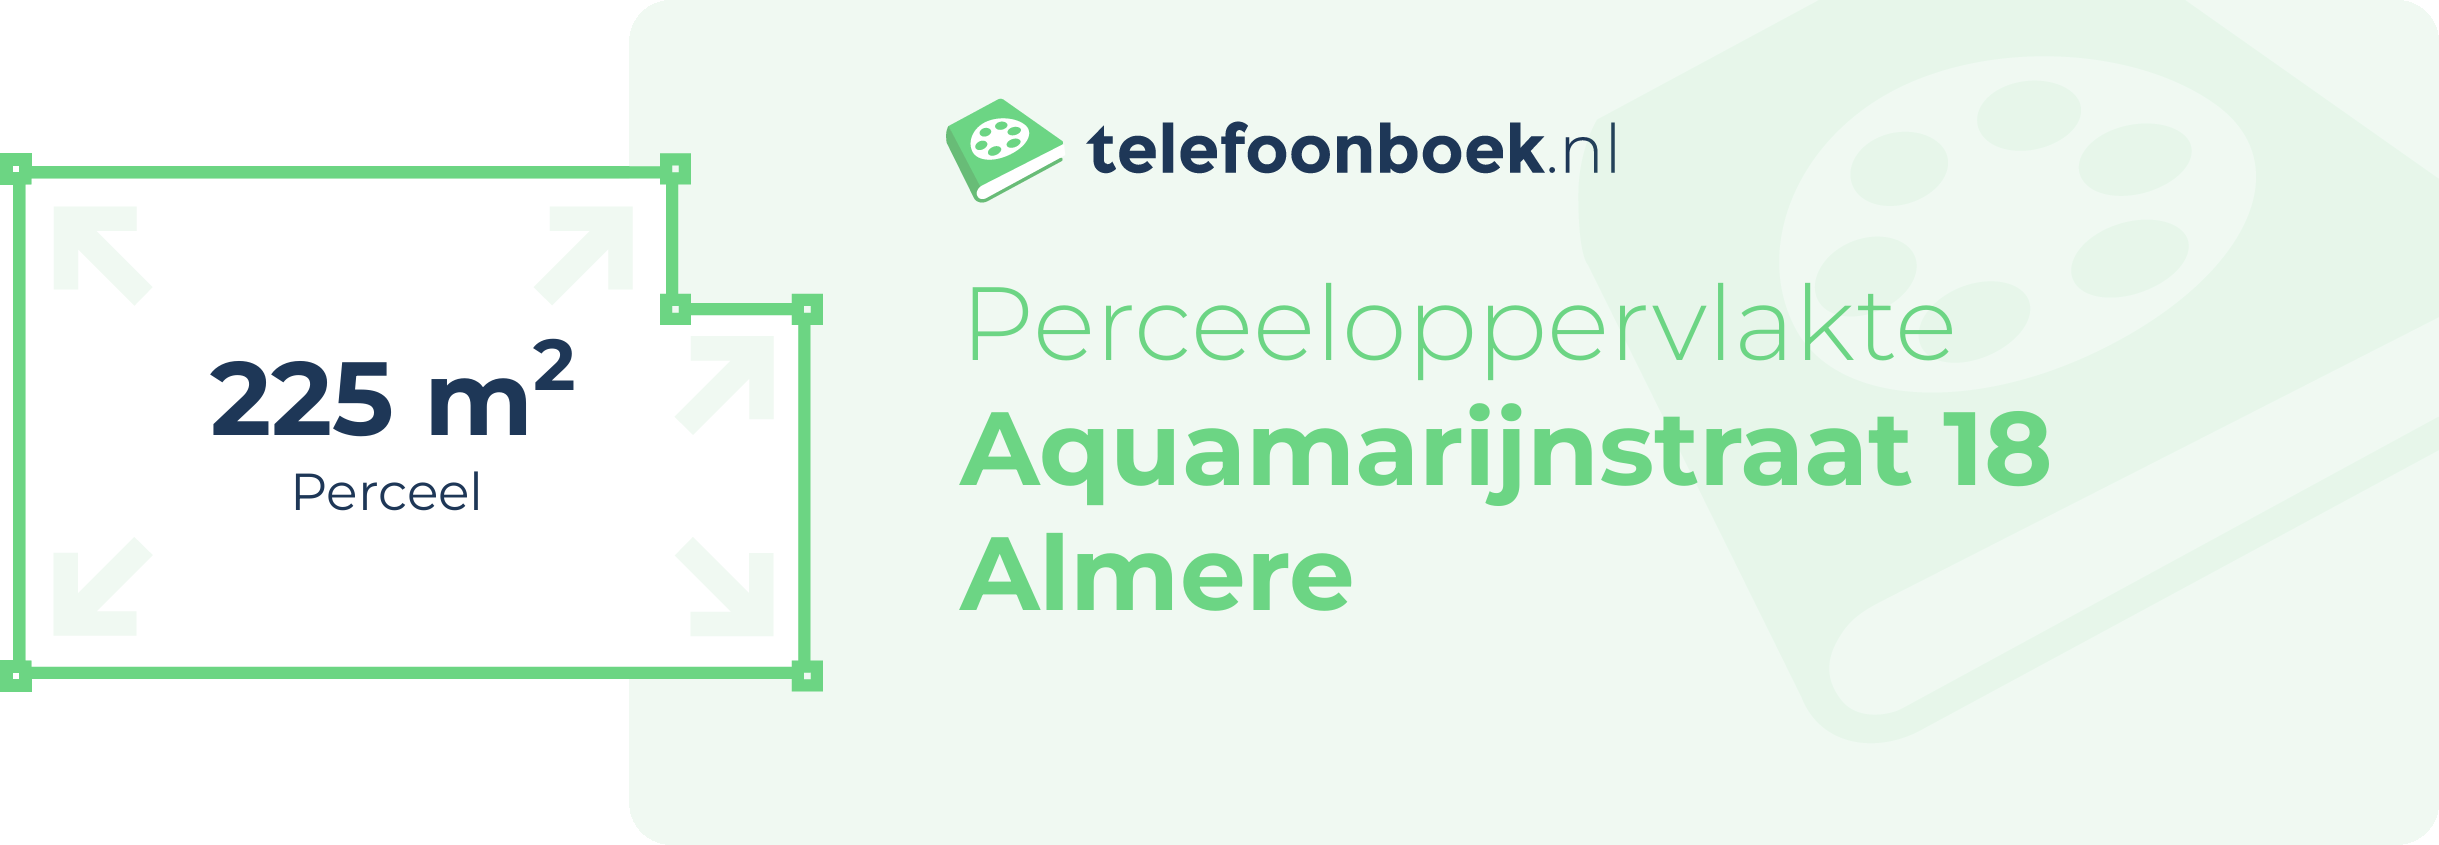 Perceeloppervlakte Aquamarijnstraat 18 Almere